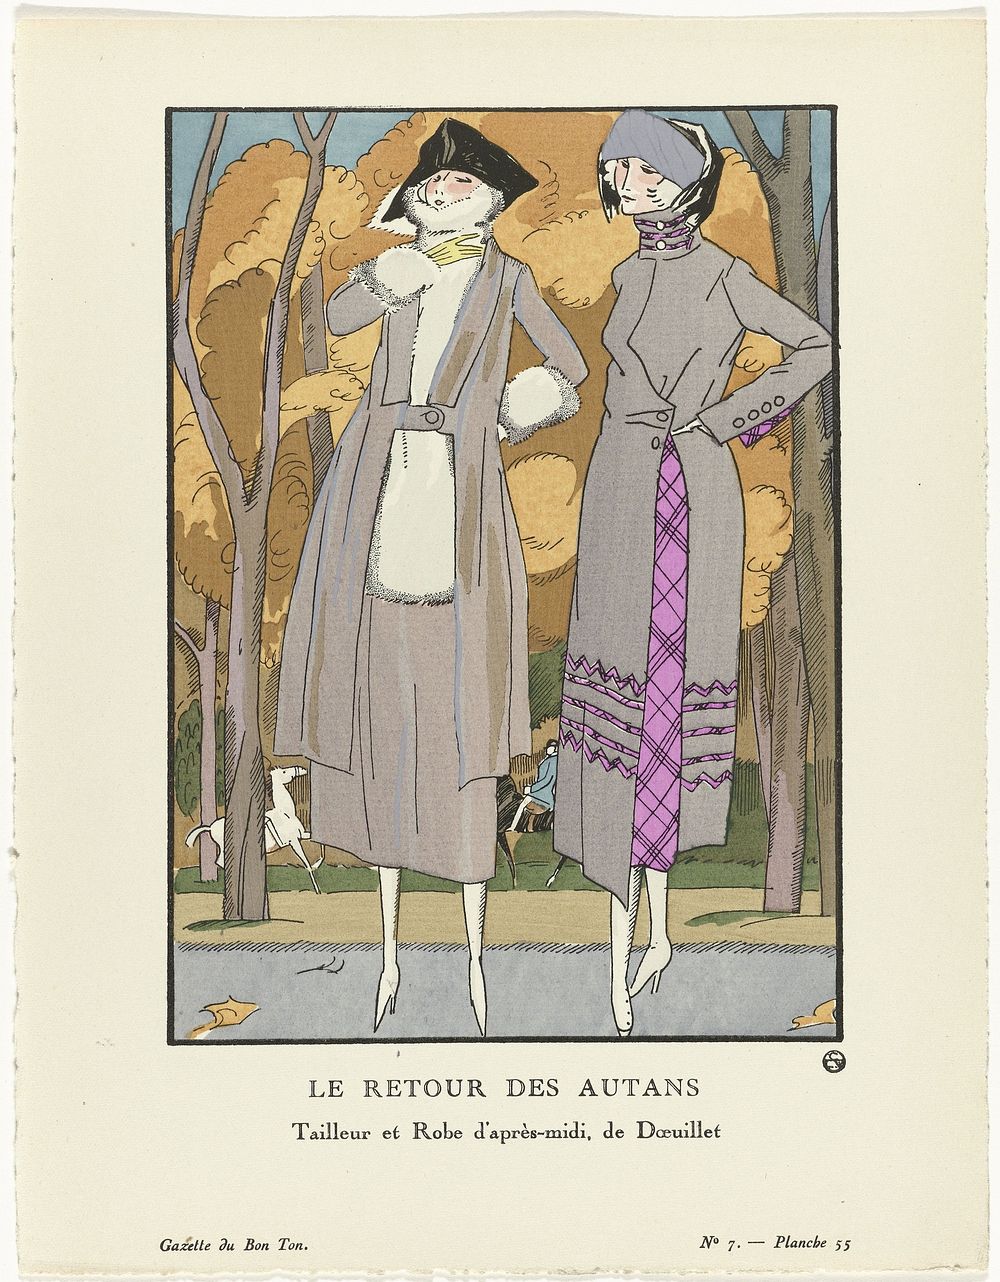 Gazette du Bon Ton, 1920 - No. 7, Pl. 55: Le retour des autans / Tailleur et Robe d'après-midi, de Doeuillet (1920) by…